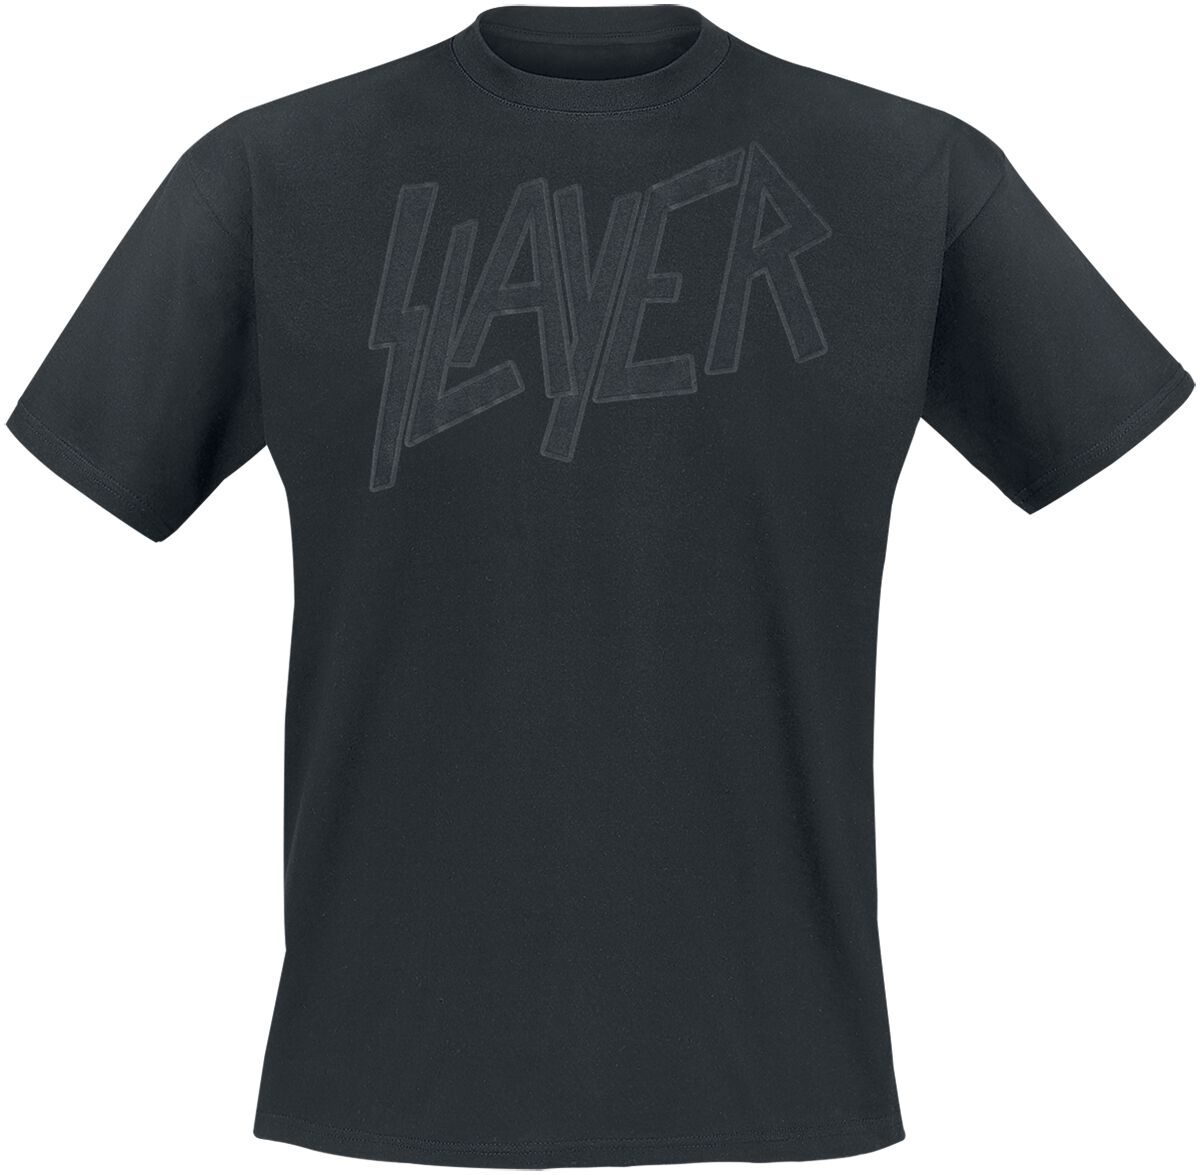 Slayer T-Shirt - Black On Black Logo - S bis M - für Männer - Größe S - schwarz  - Lizenziertes Merchandise!